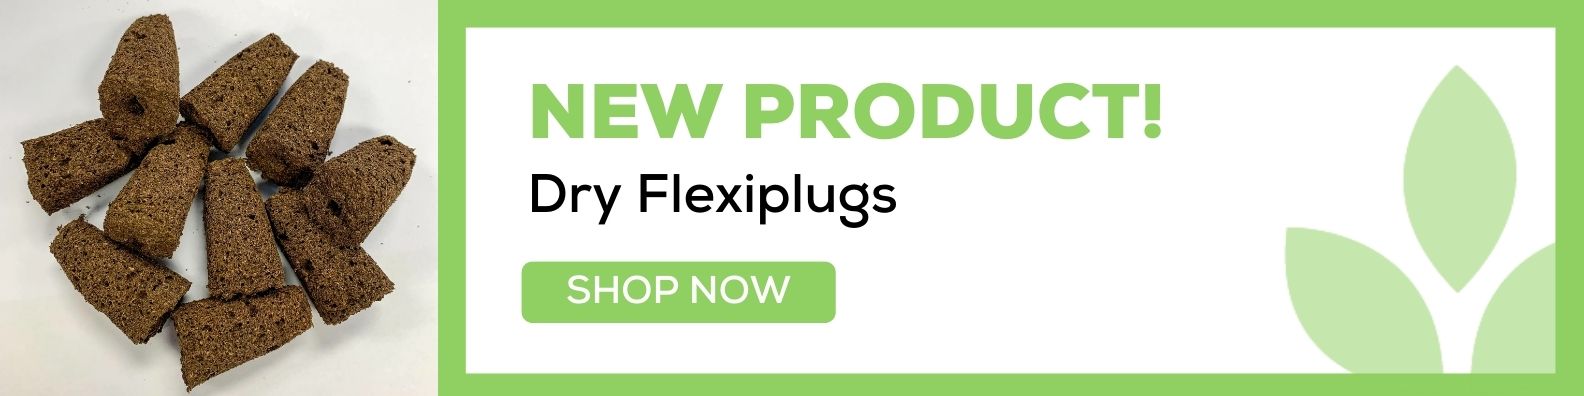 Dry flexiplug add/promo